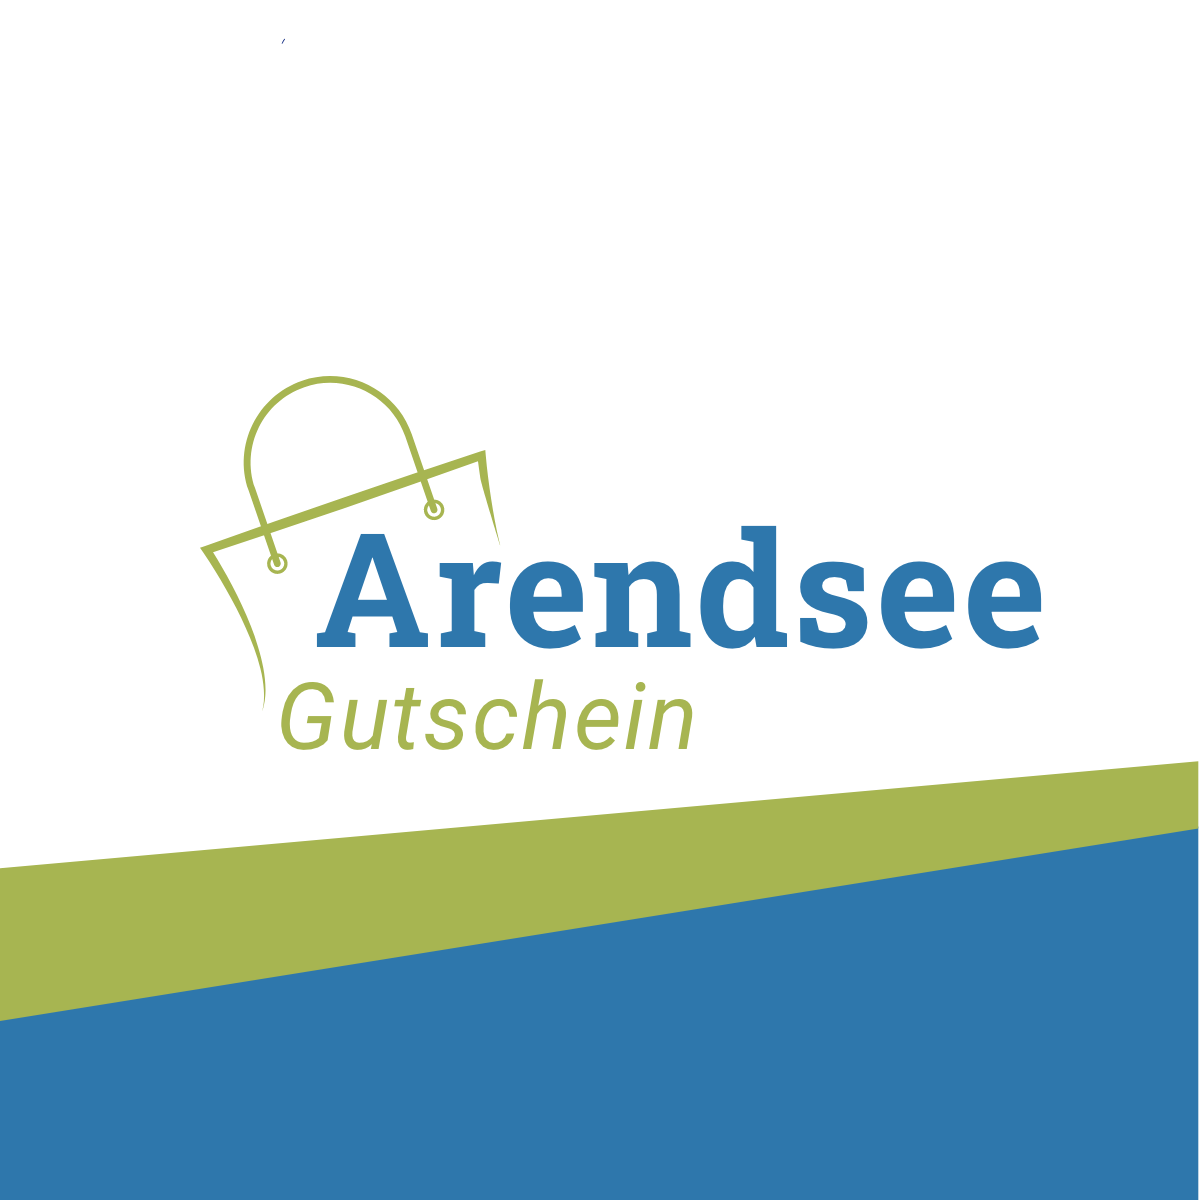 (c) Arendsee-gutschein.de